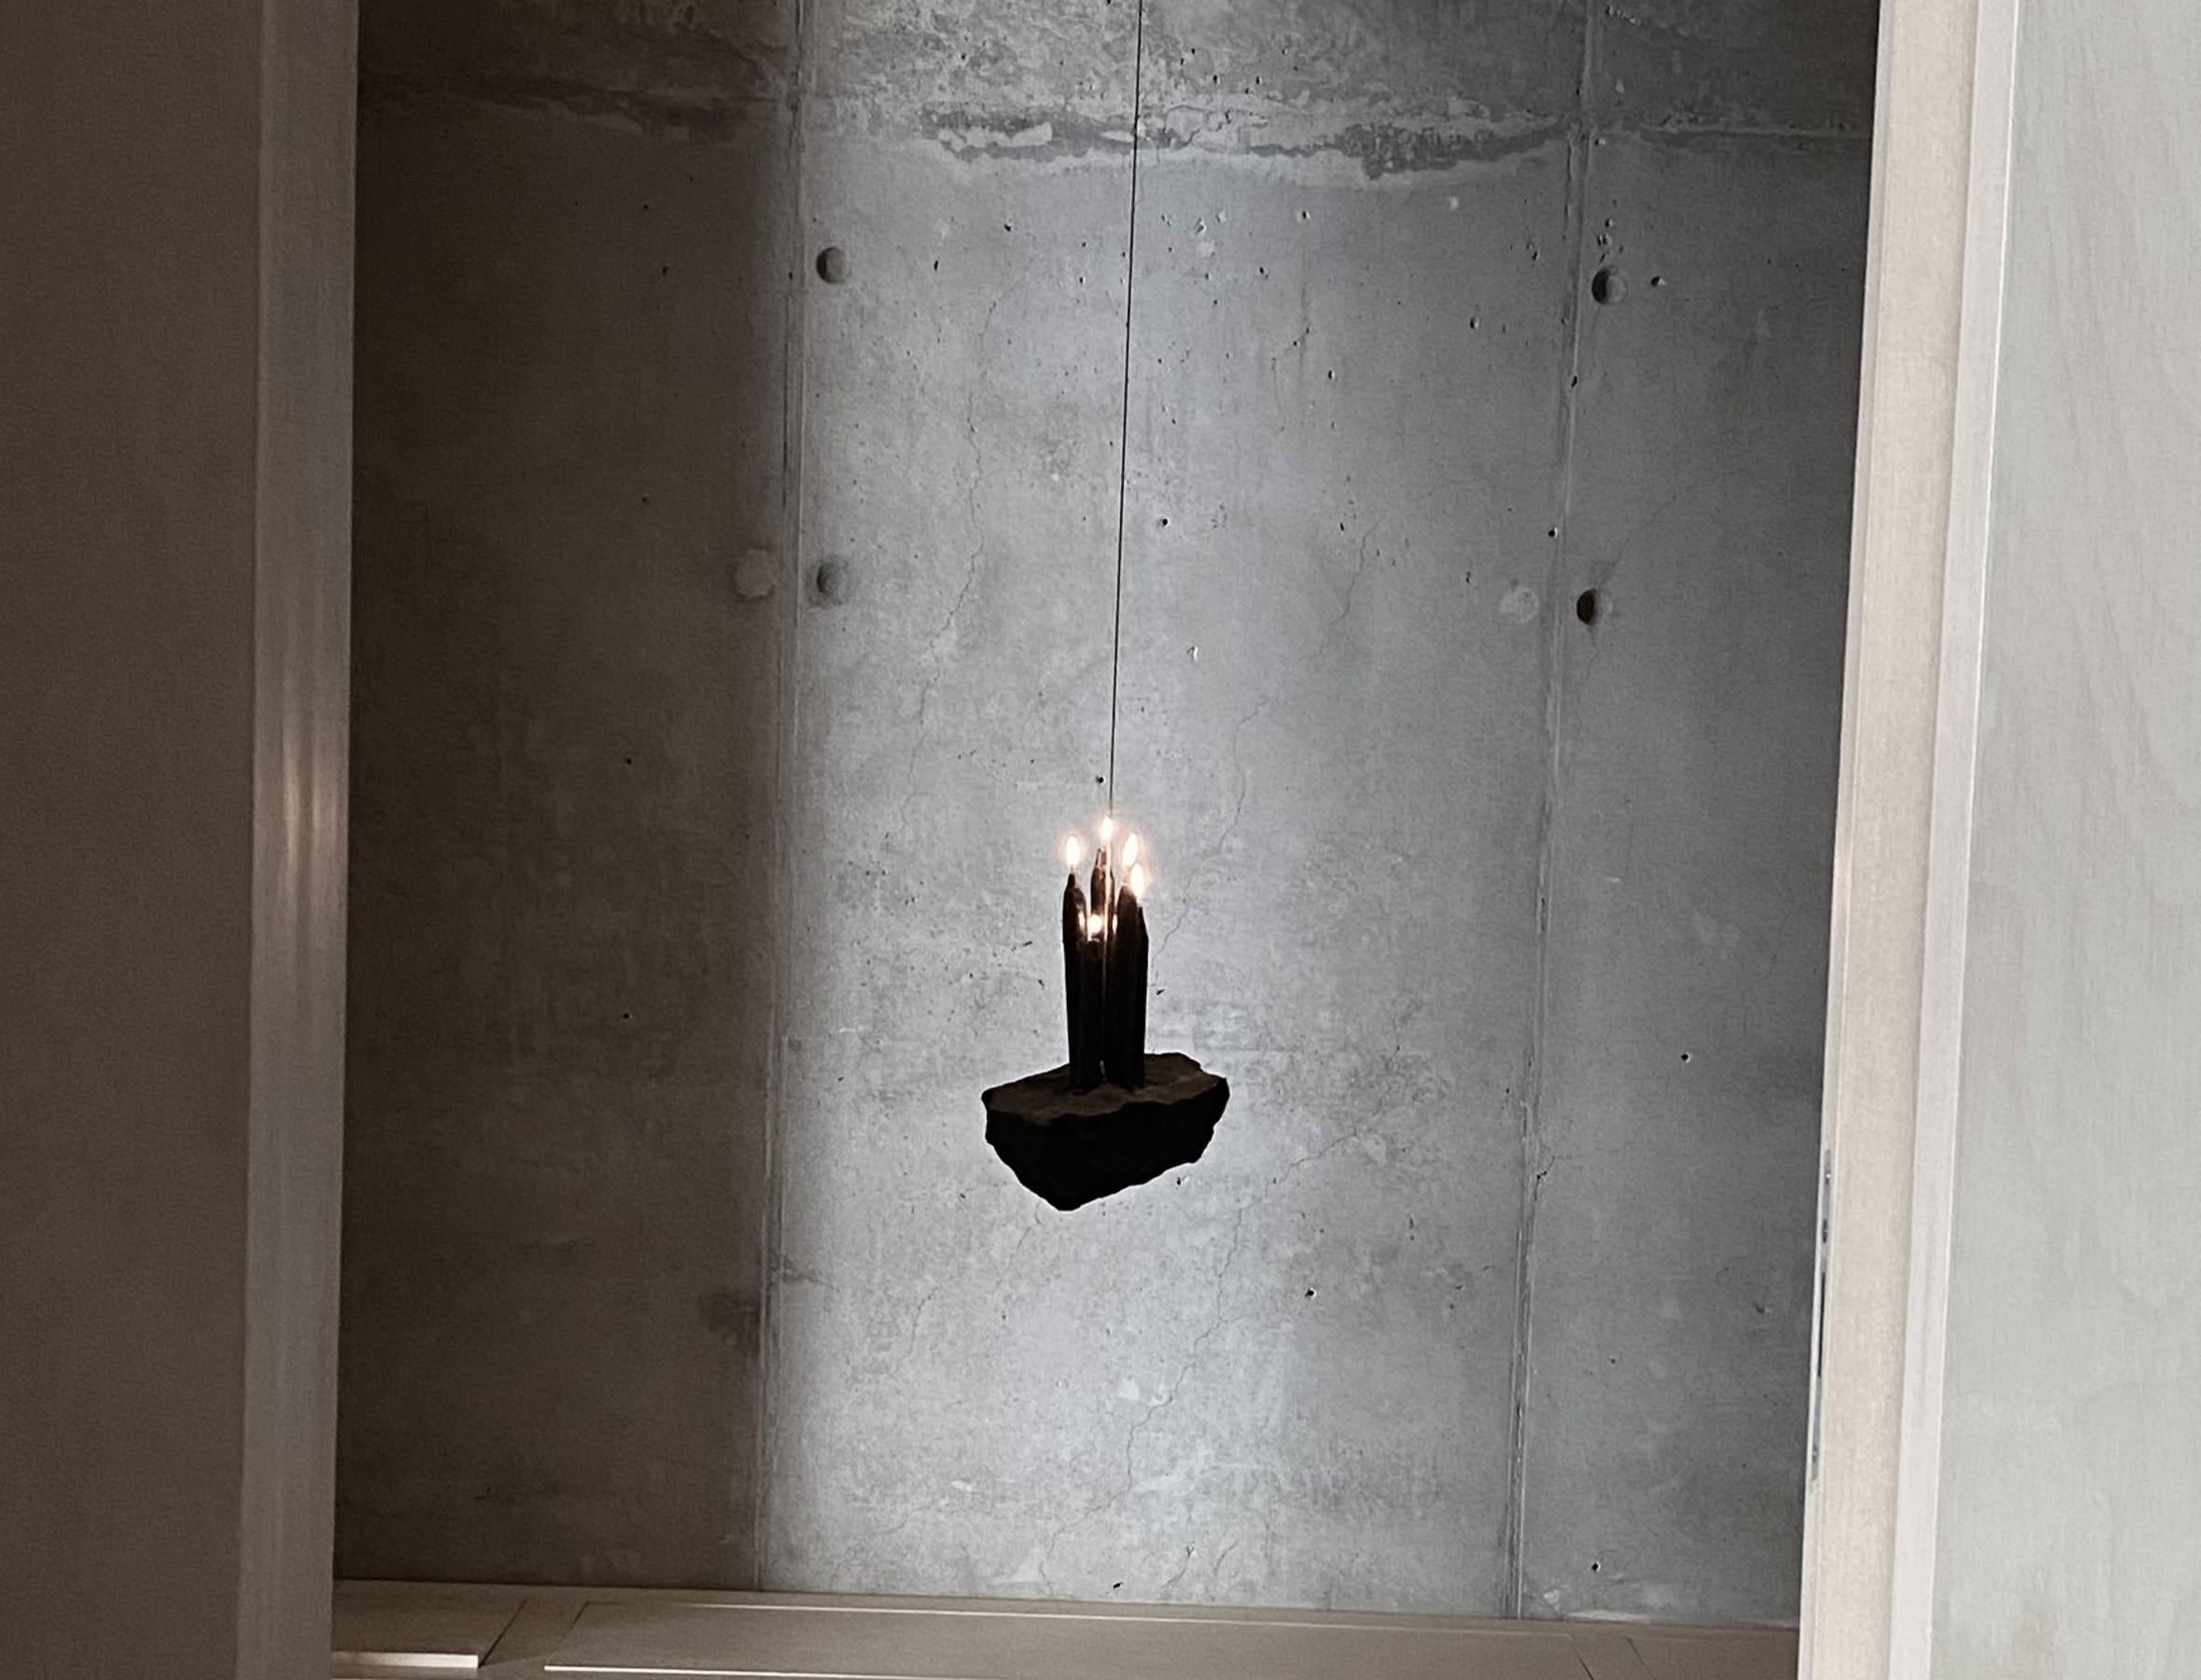 Existencia Basaltstein-Kerzenhalter von Andres Monnier
Abmessungen: T 40 x B 50 x H 60 cm.
MATERIALIEN: Basaltstein.

Andrés Monnier, geboren in Guadalajara, lebt in Ensenada, Mexiko. Seine
Ziel ist es, skulpturale Werke zu schaffen, um